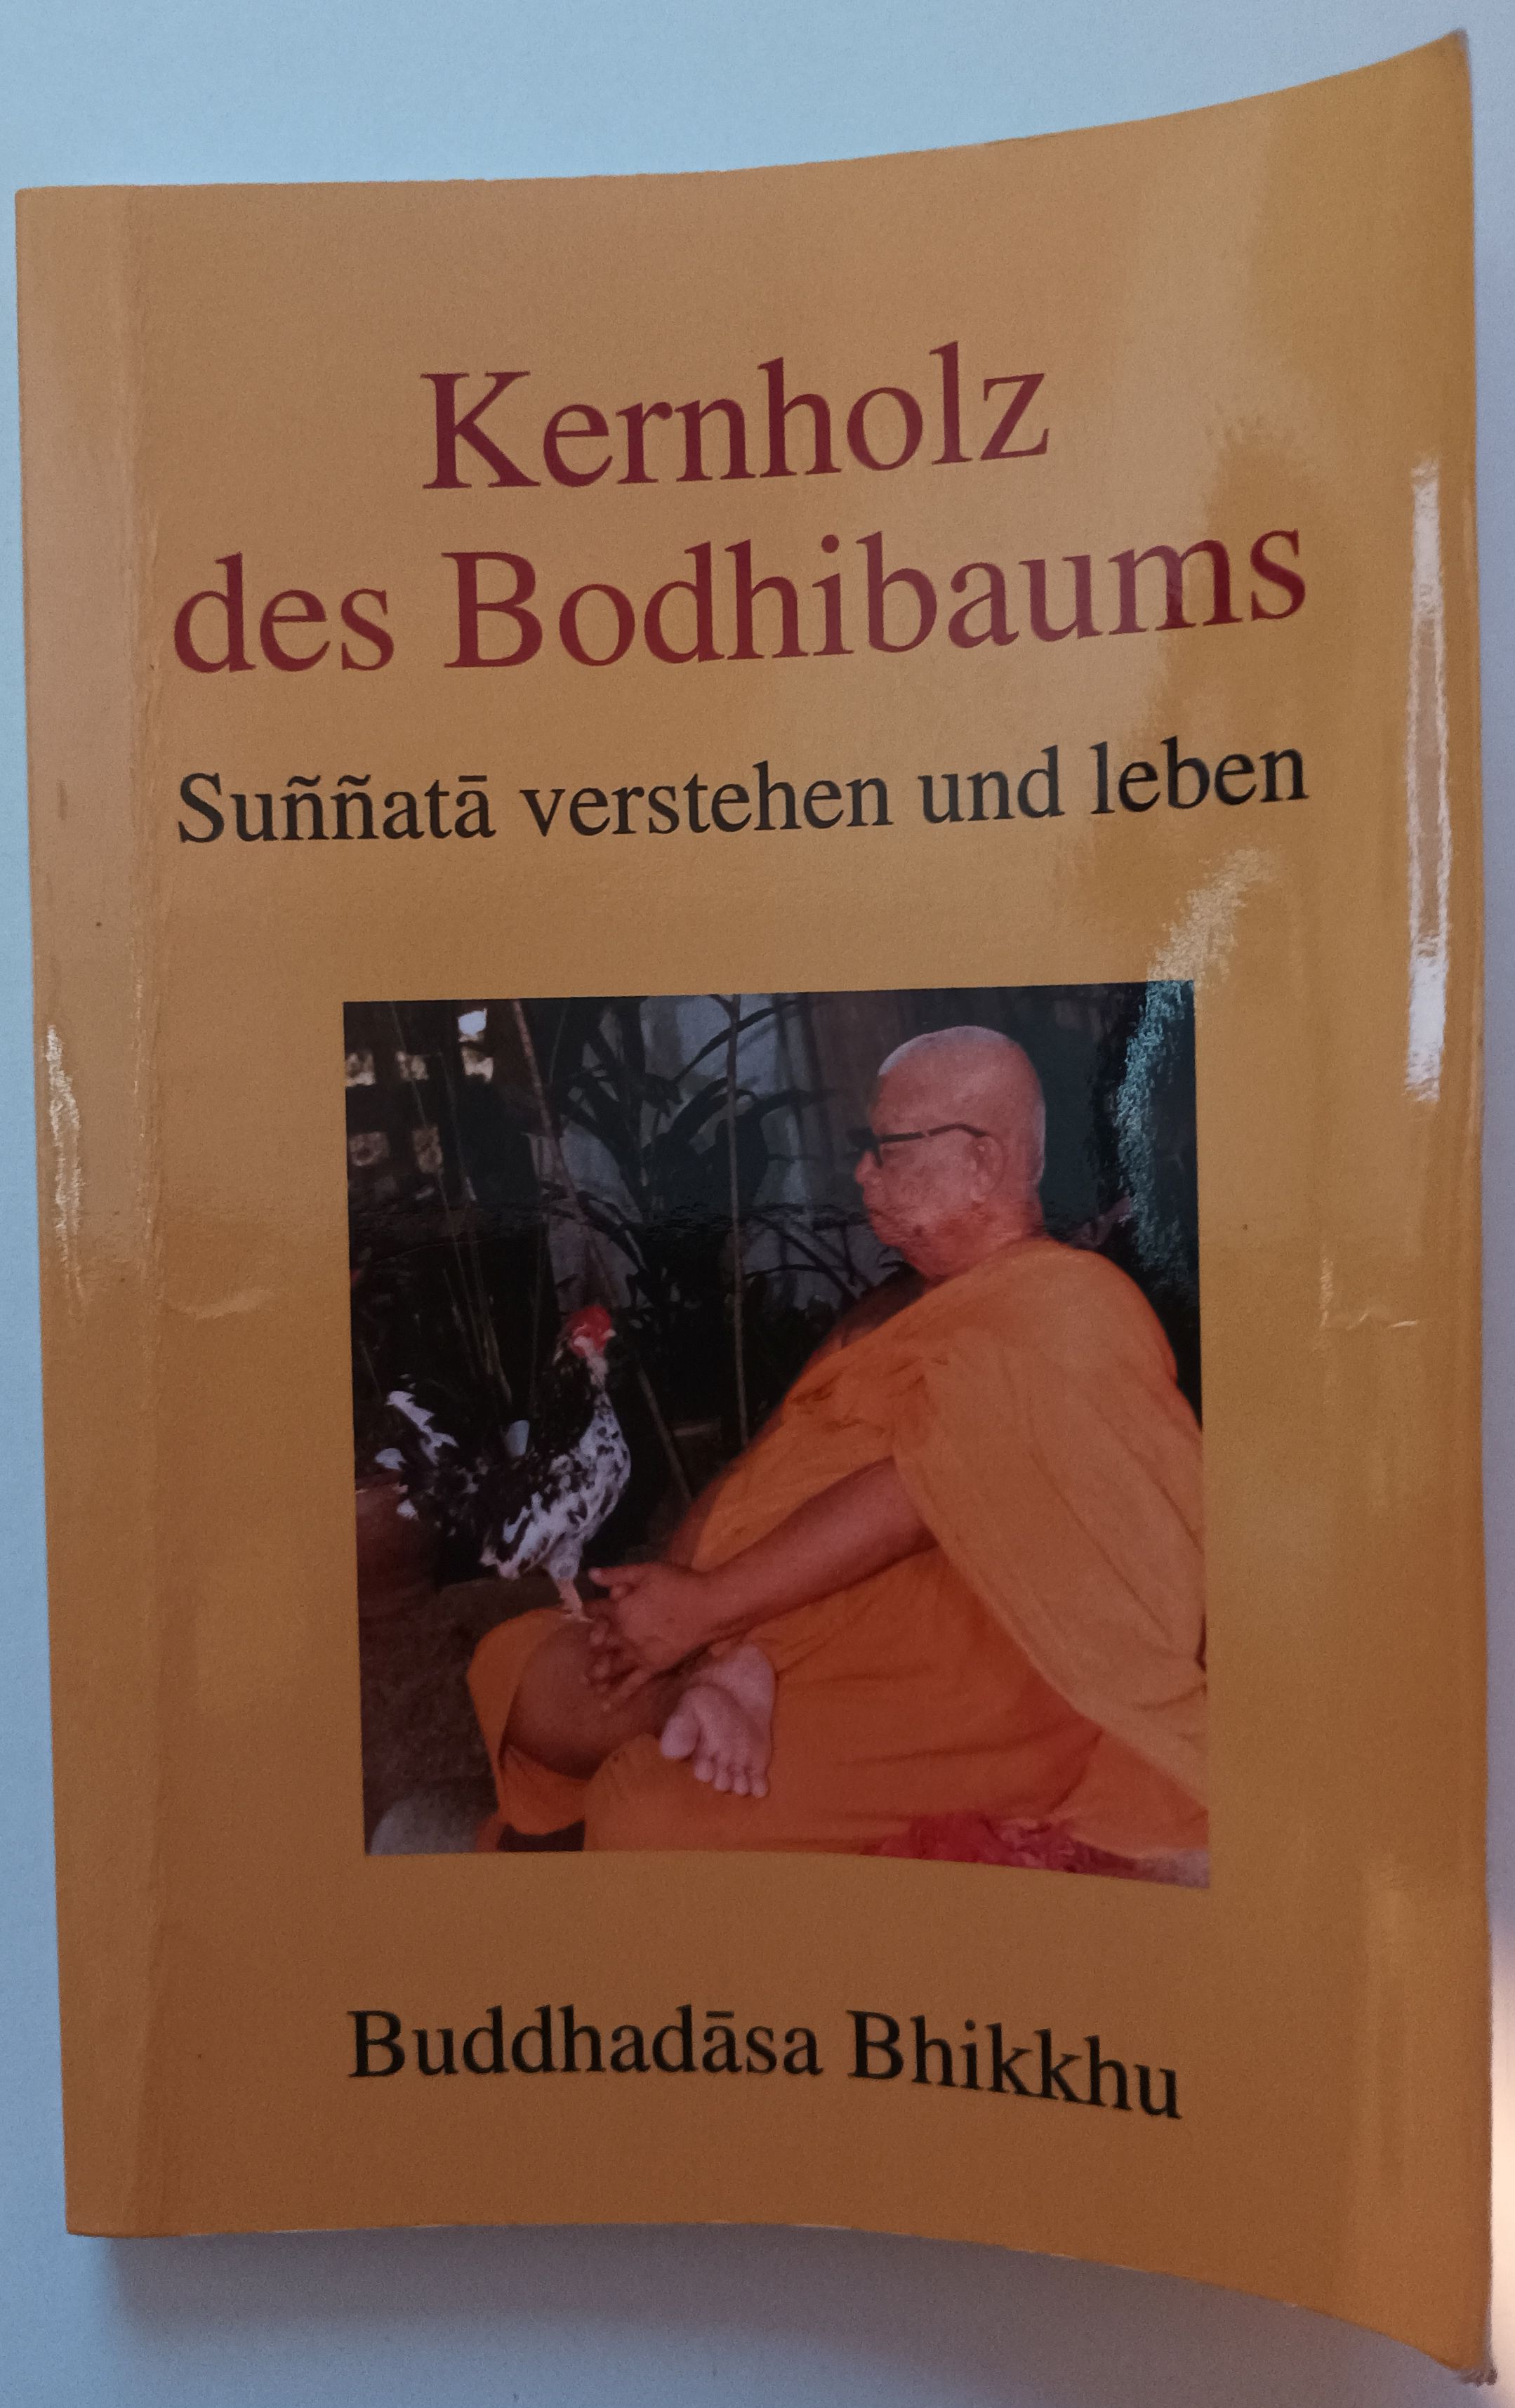 Kernholz des Bodhibaums - Sunnata verstehen und leben. - Buddhadasa Bhikkhu